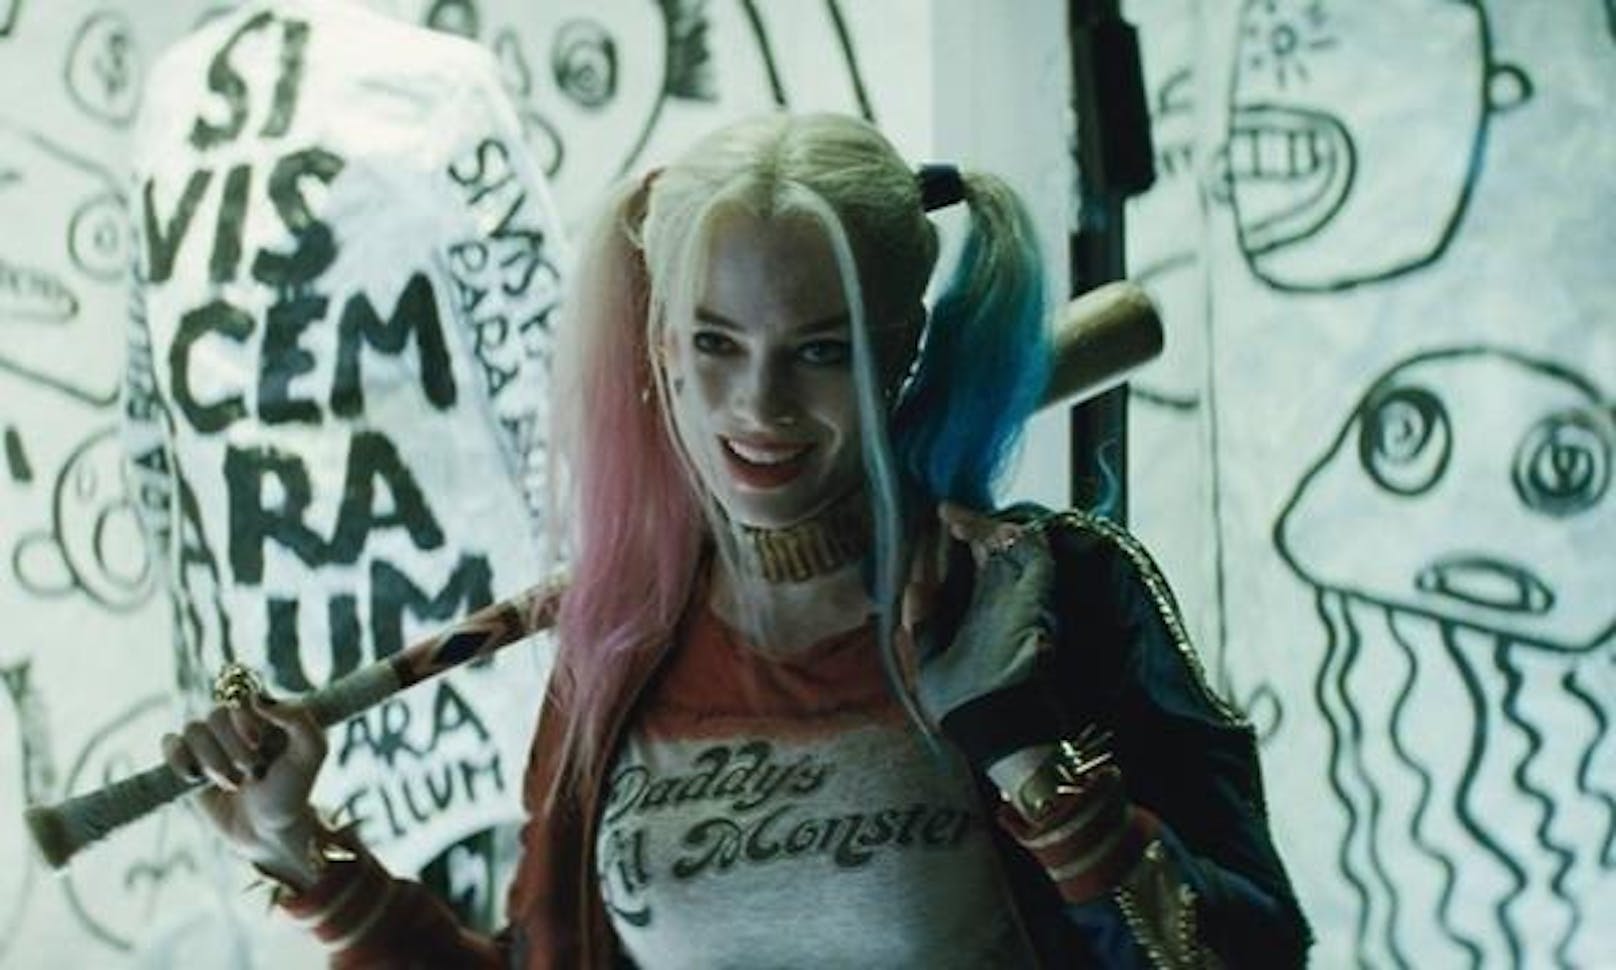 ... sich Margot Robbie einen Platz im Filmuniversum von DC sicherte. "Suicide Squad" (2016) fiel zwar bei den Kritikern durch, Robbies Harley Quinn war jedoch ein strahlender Lichtblick in einem verkorksten Film. Drei weitere Filme mit der Schurkin wurden bestätigt - darunter sogar ein Solo-Abenteuer..